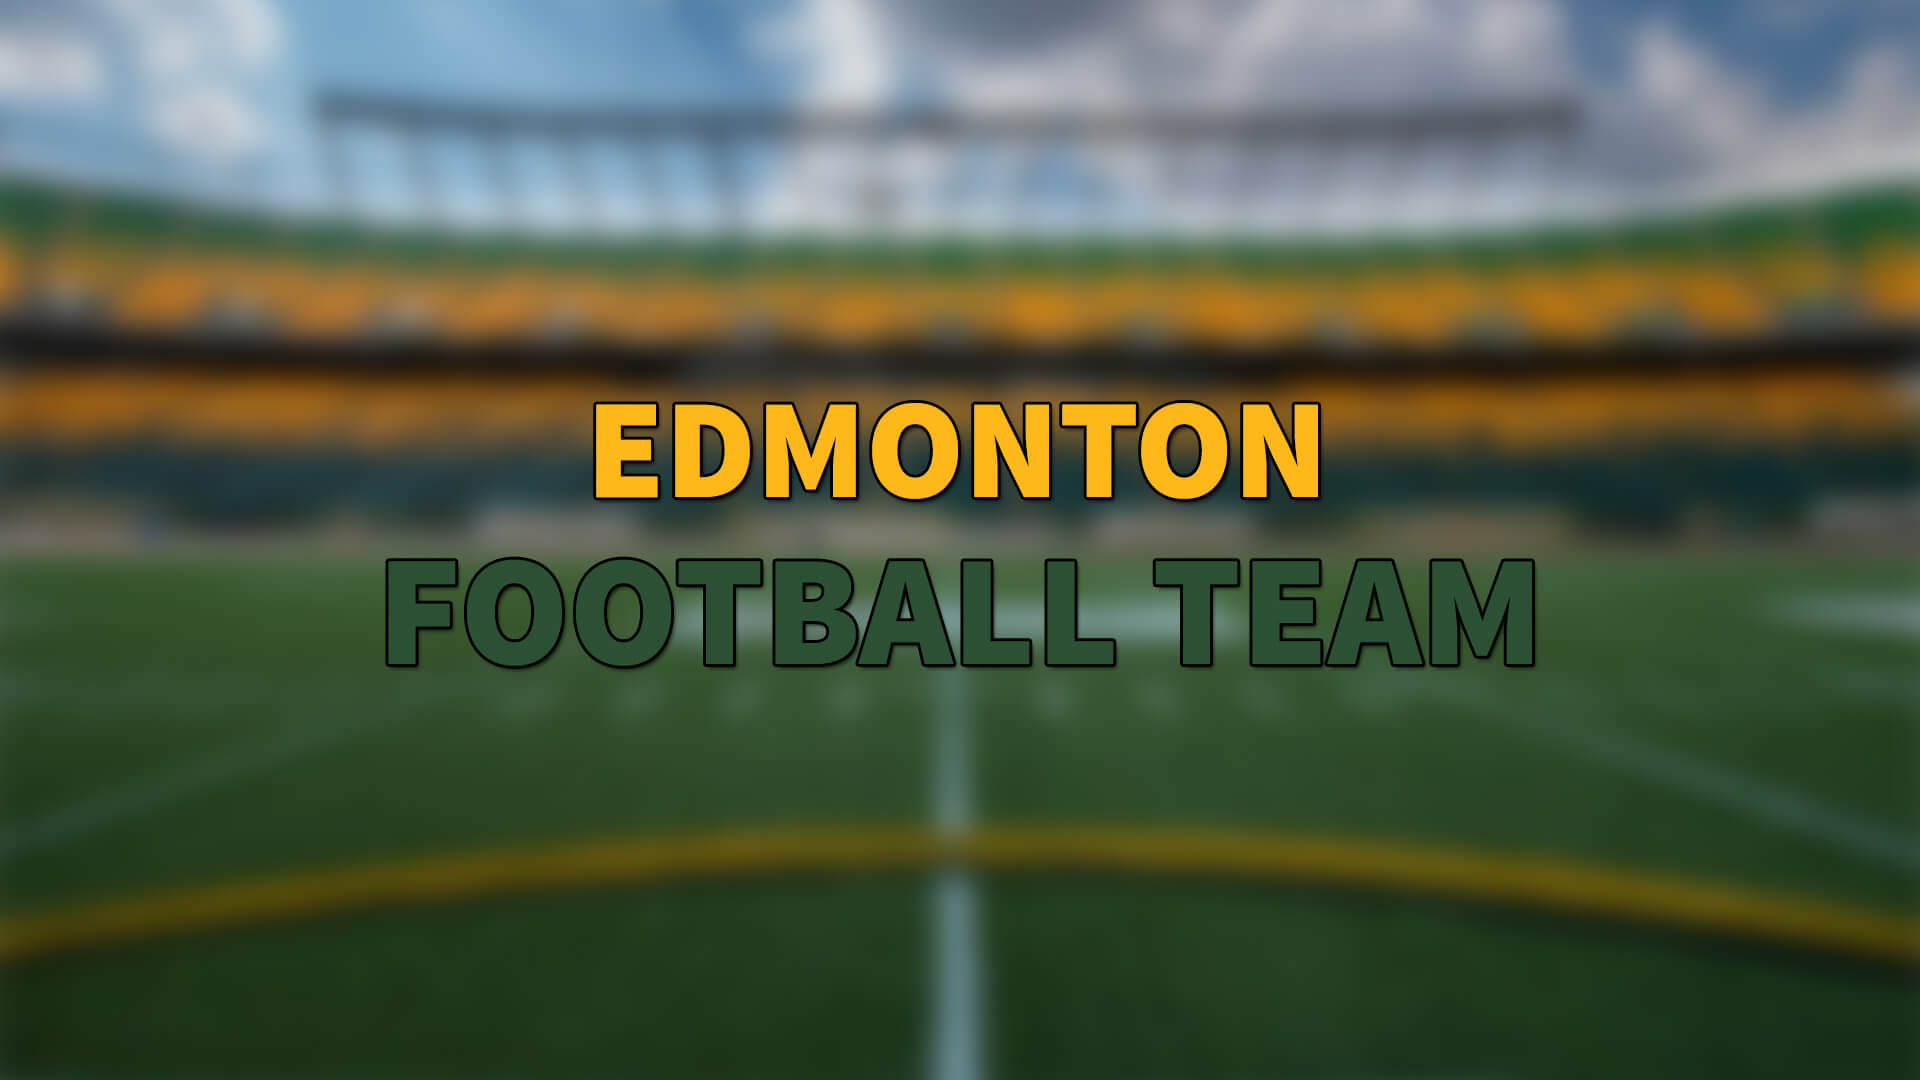 Edmonton SirVincent Rogers'la Kontratı Uzattı | Korumalı Futbol Türkiye